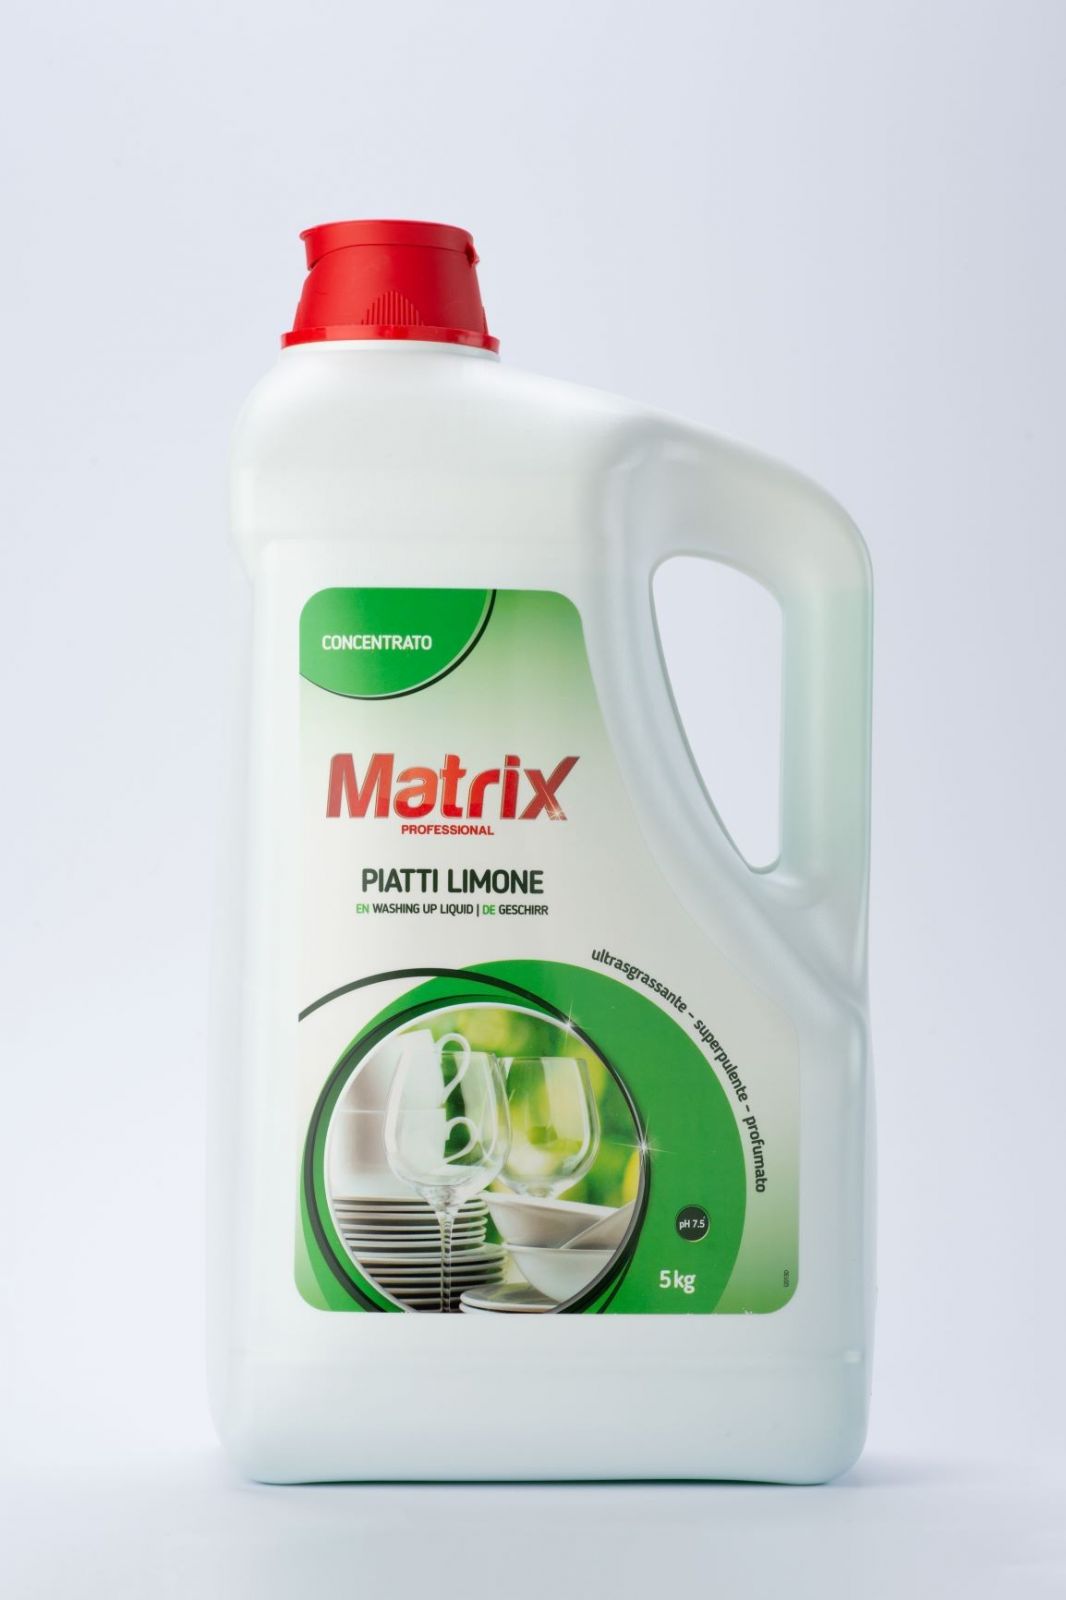 Immagine Matrix detergente piatti al limone 5kg